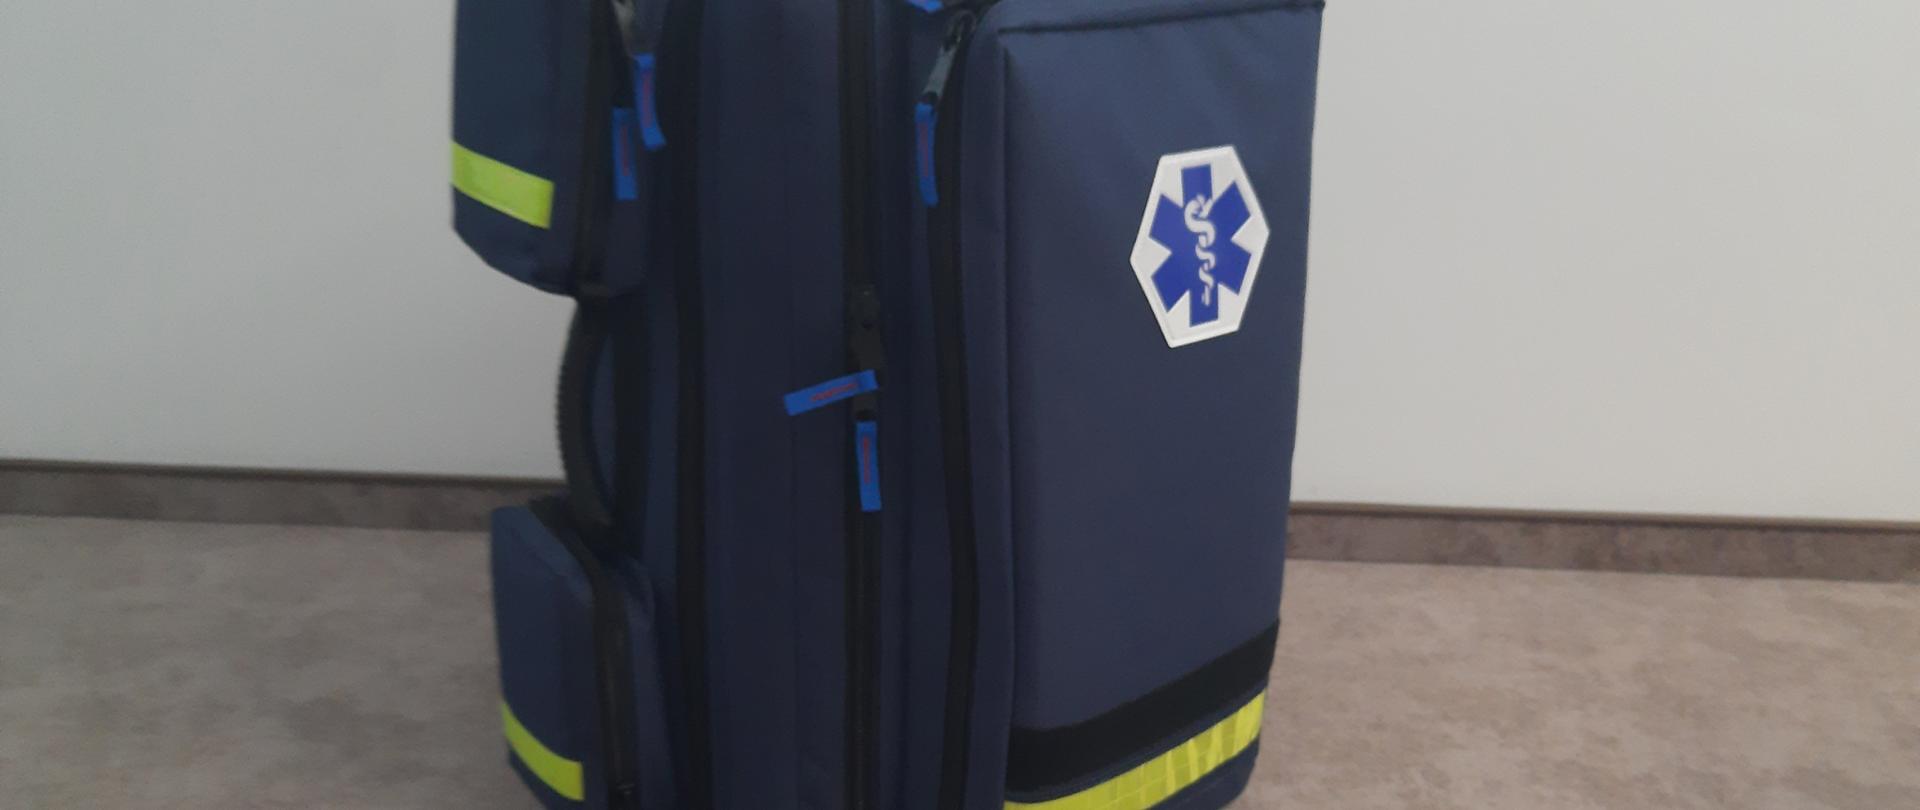 Plecak medyczny koloru granatowego z logo ratownictwa medycznego na środku torby.